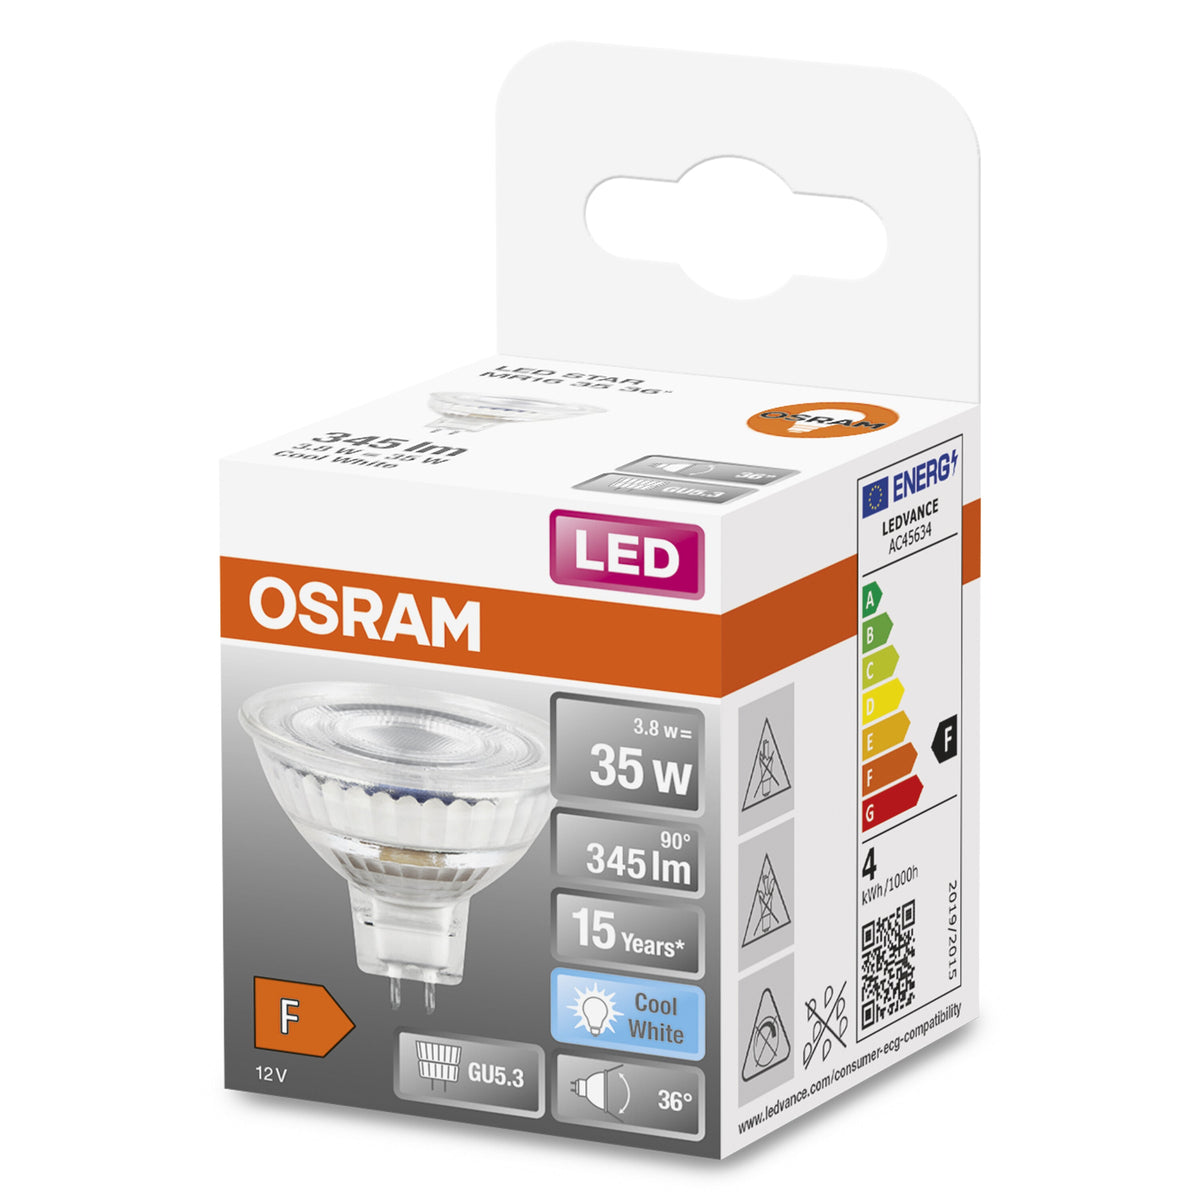 Lampada con riflettore LED OSRAM MR16 con attacco GU5.3, bianco freddo (4000K), spot in vetro, 3,80 W, ricambio per lampada con riflettore da 35 W, LED STAR MR16 12 V